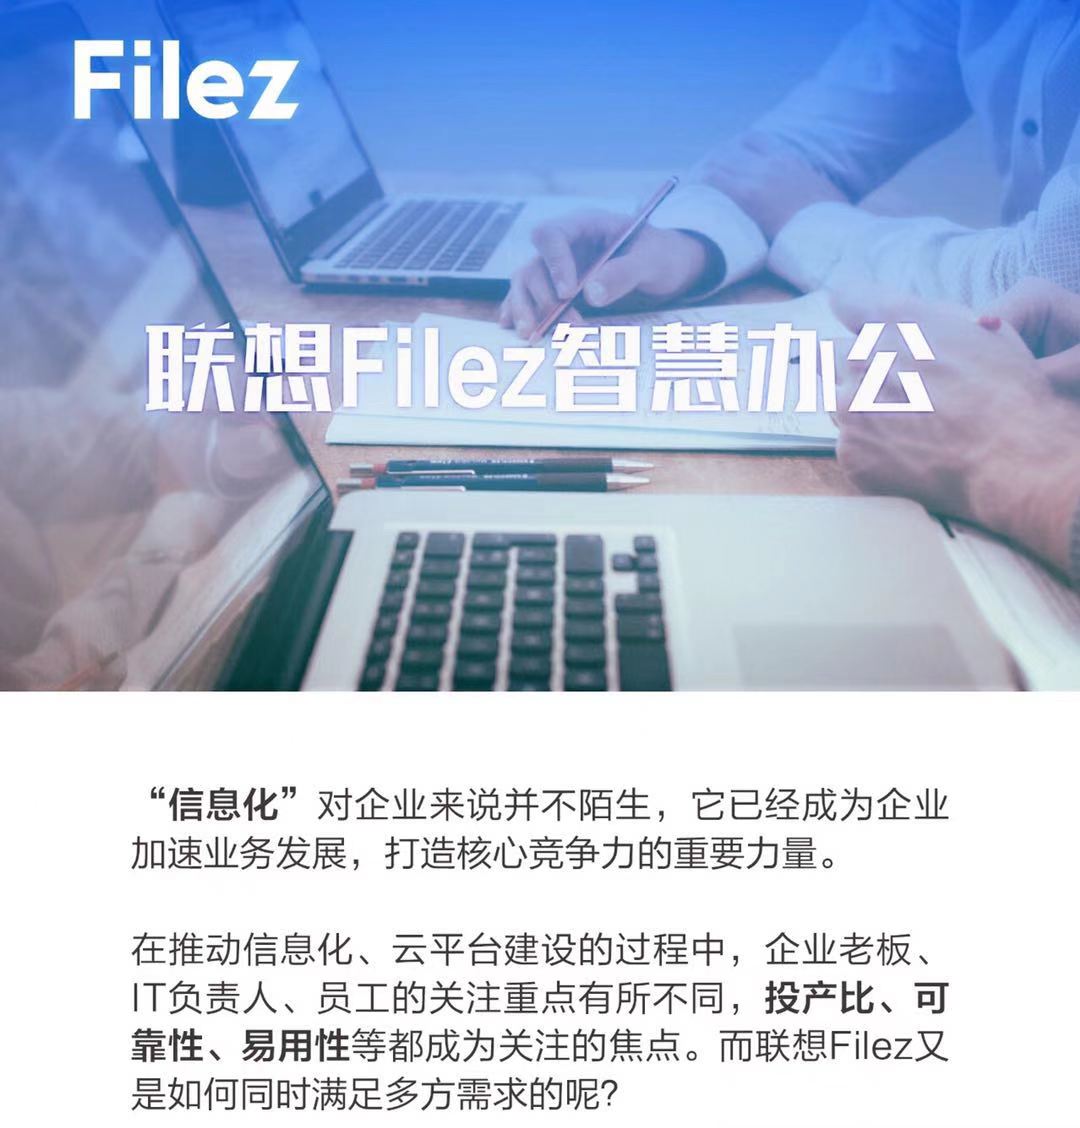 投产比+安全+高效，联想Filez如何一站式满足所有需求？